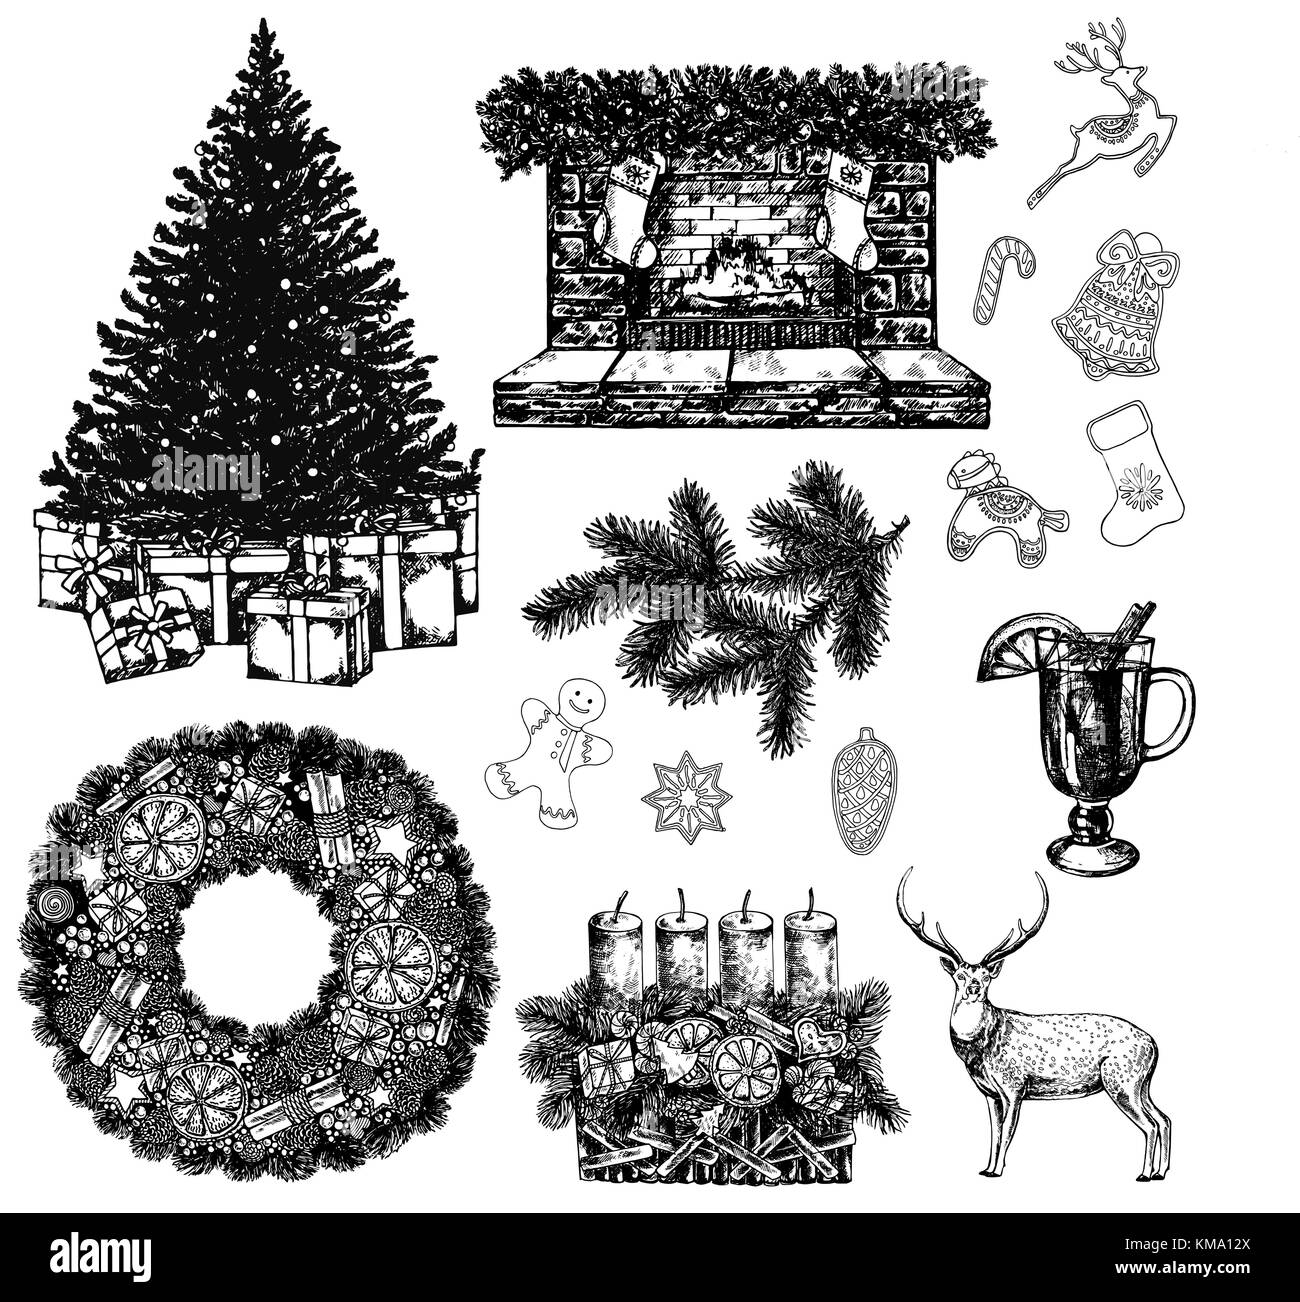 Satz von Hand gezeichnete Skizze stil Weihnachten und neues Jahr thematische Objekte und Elemente. Vector Illustration auf weißem Hintergrund. Stock Vektor